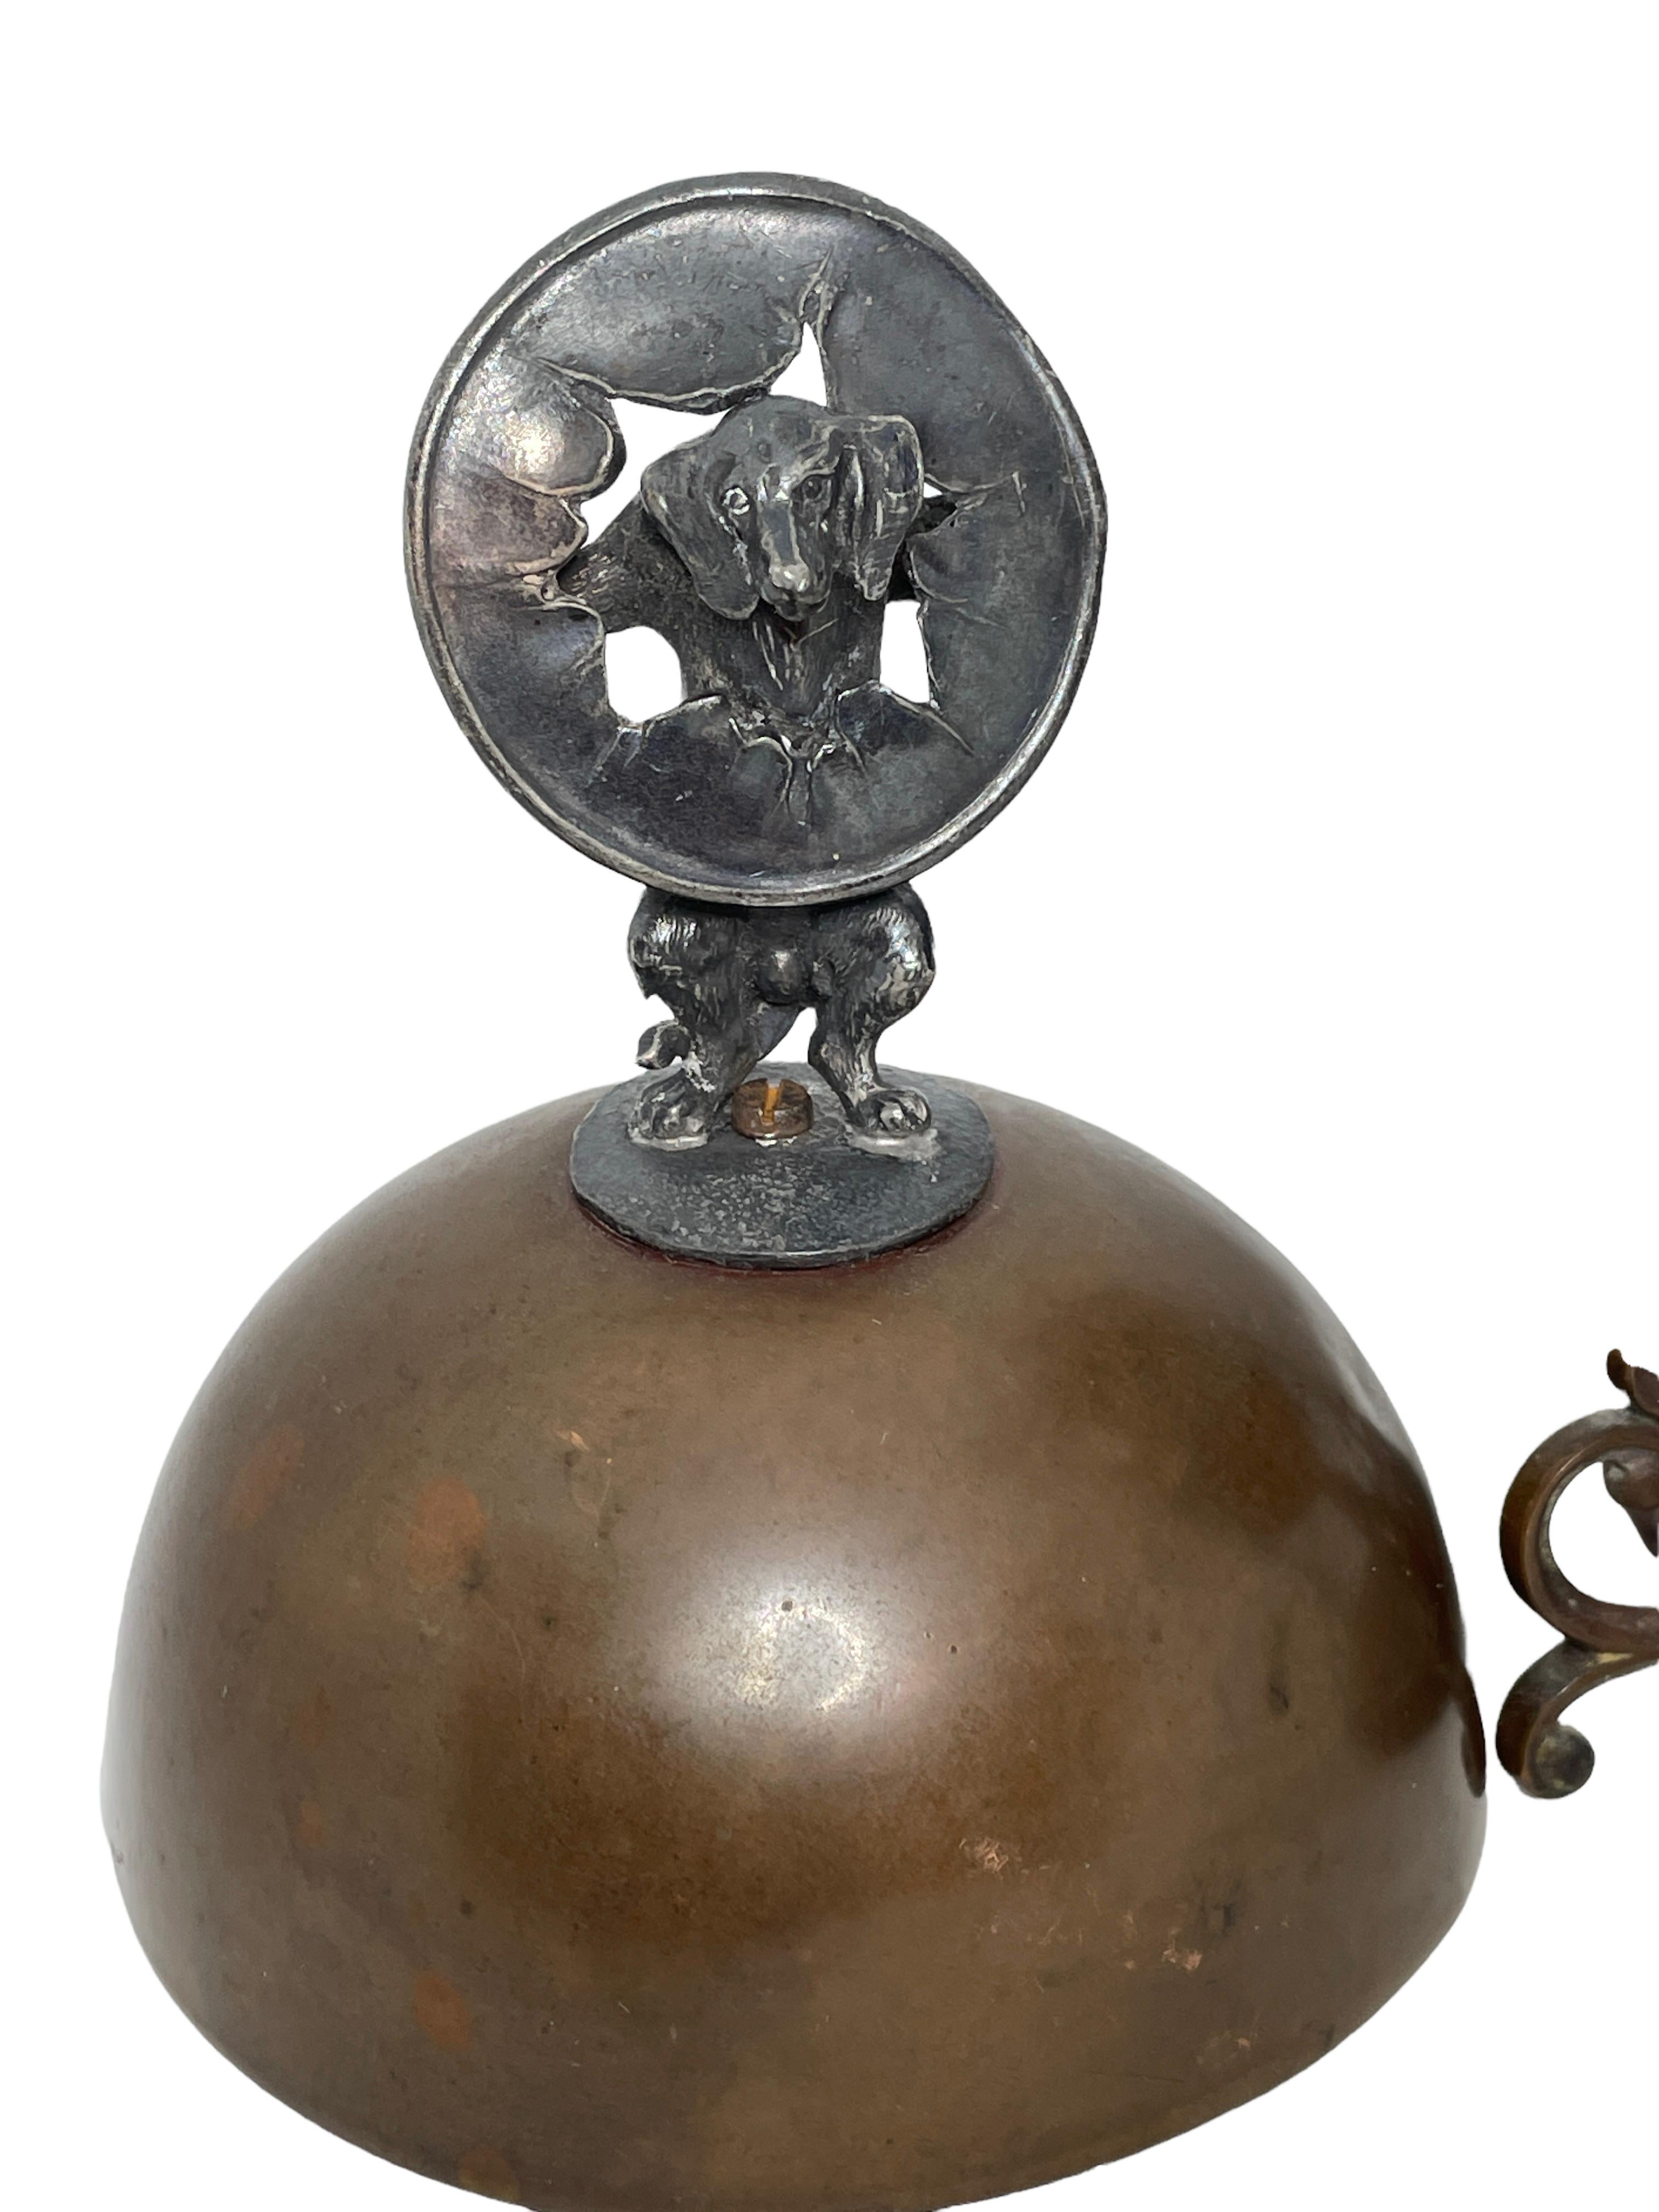 Antique 19th c Copper Egg Coddler Egg boiler with Dog Figure, German 7